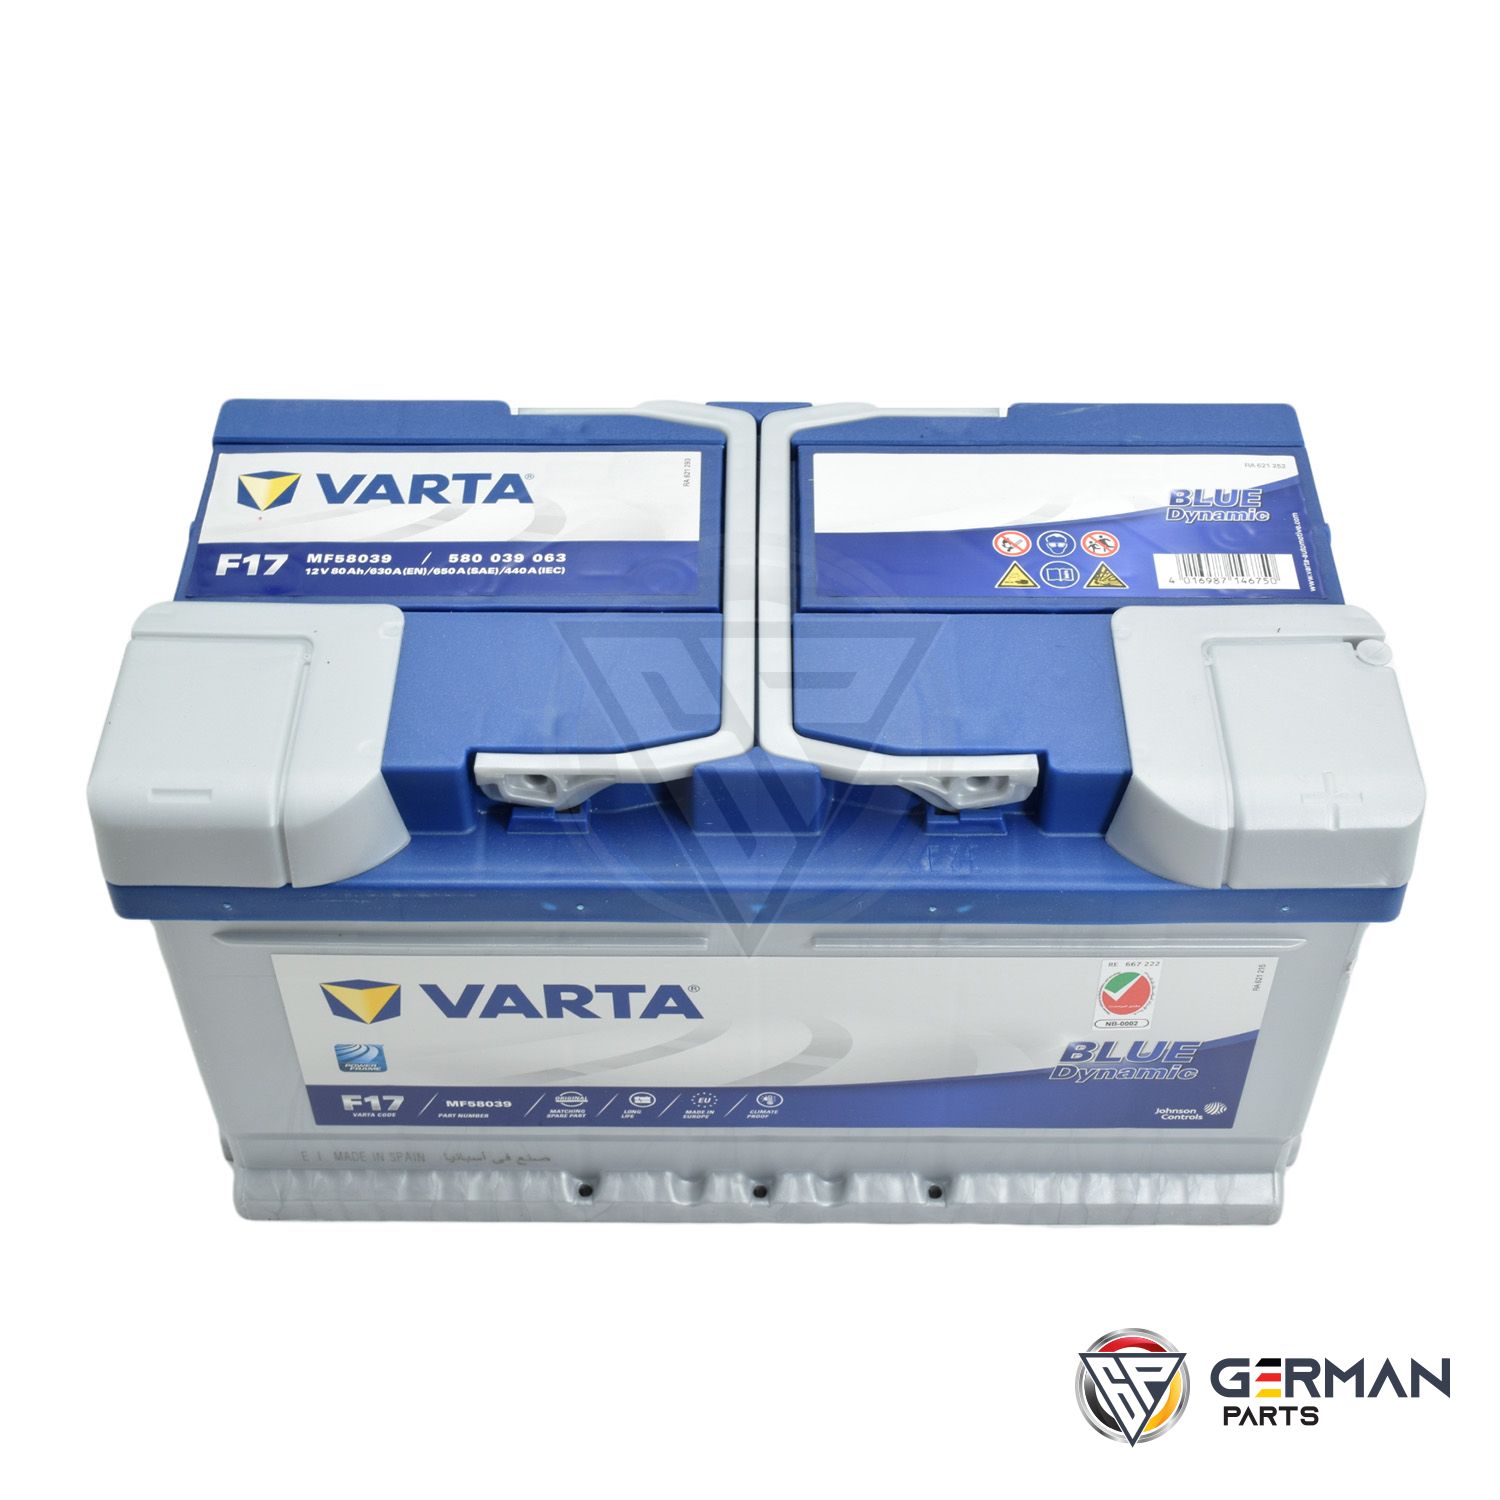 Buy Varta Battery 80 Ah DIN80MFV-F17 - German Parts